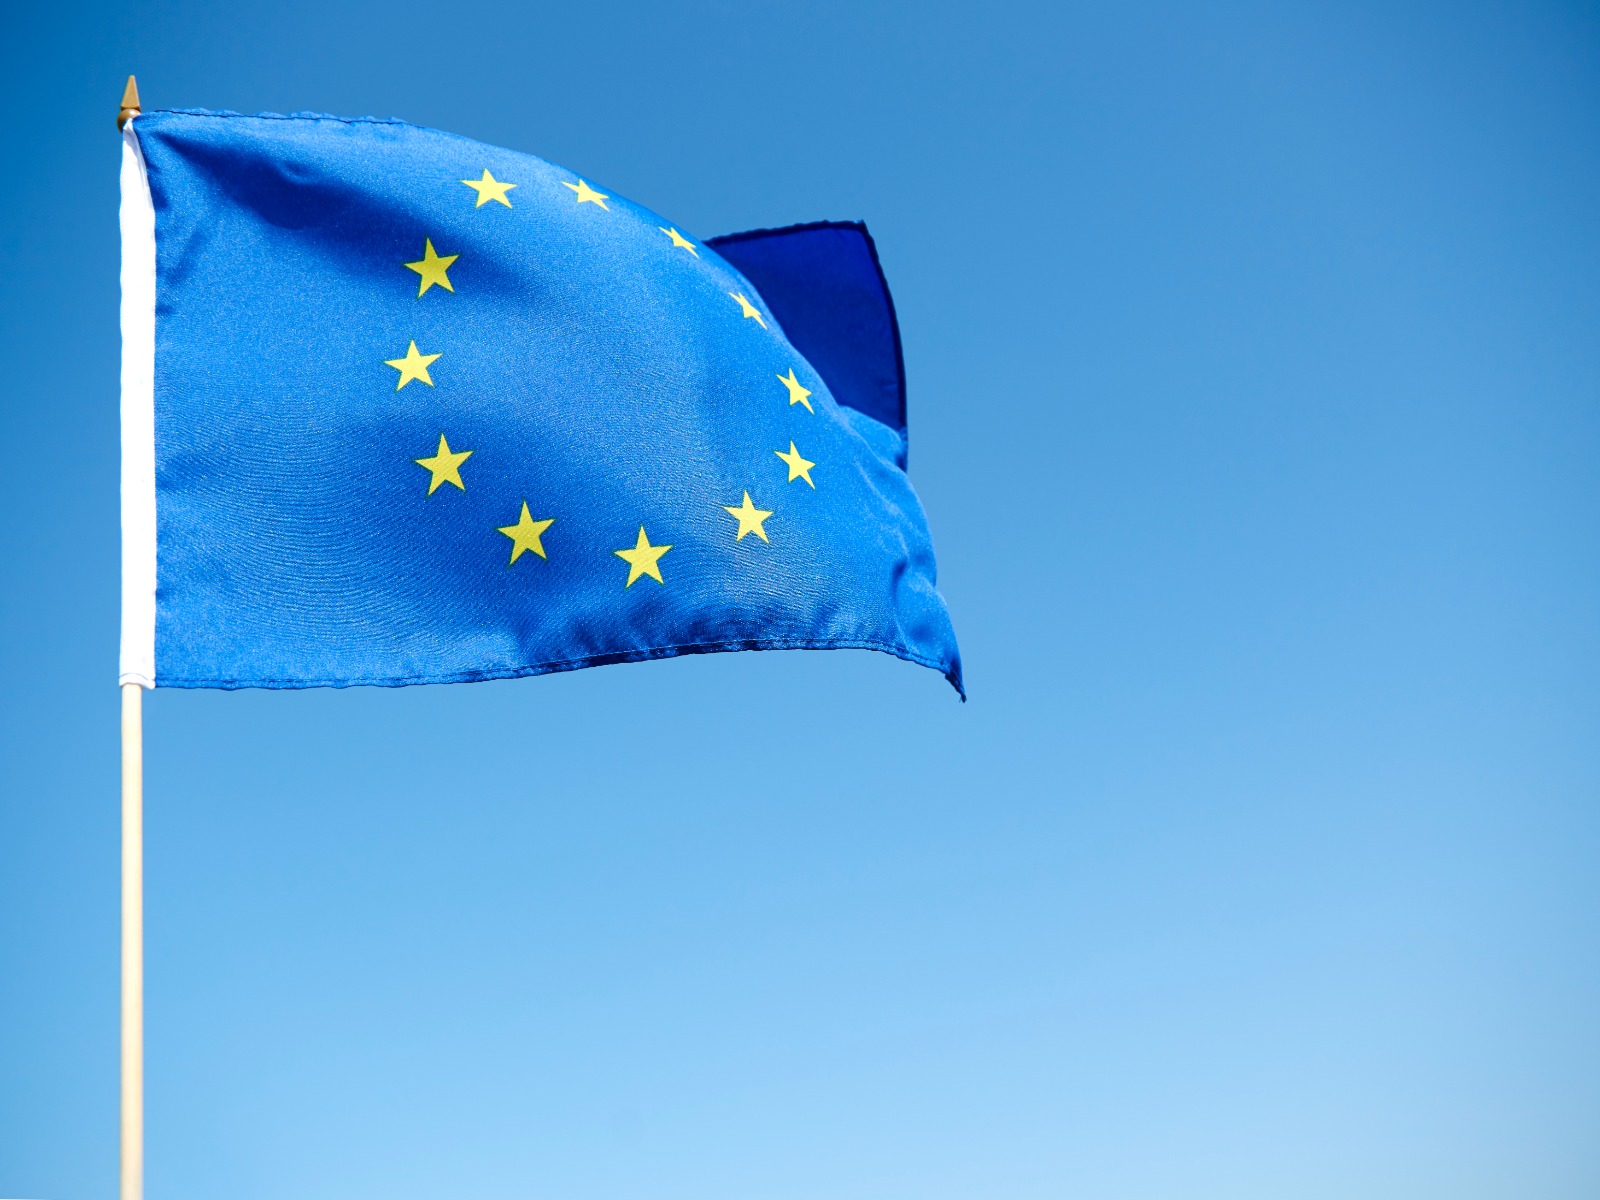 Europese-vlag-gewasbescherming-greenport